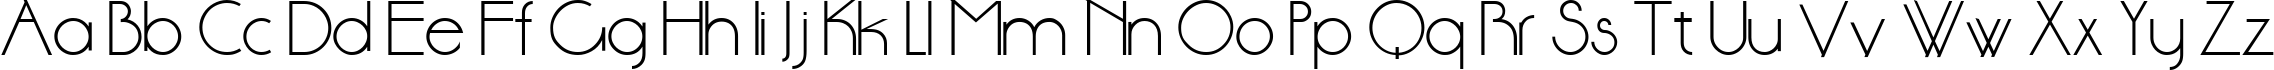 Пример написания английского алфавита шрифтом DS StandartCyr